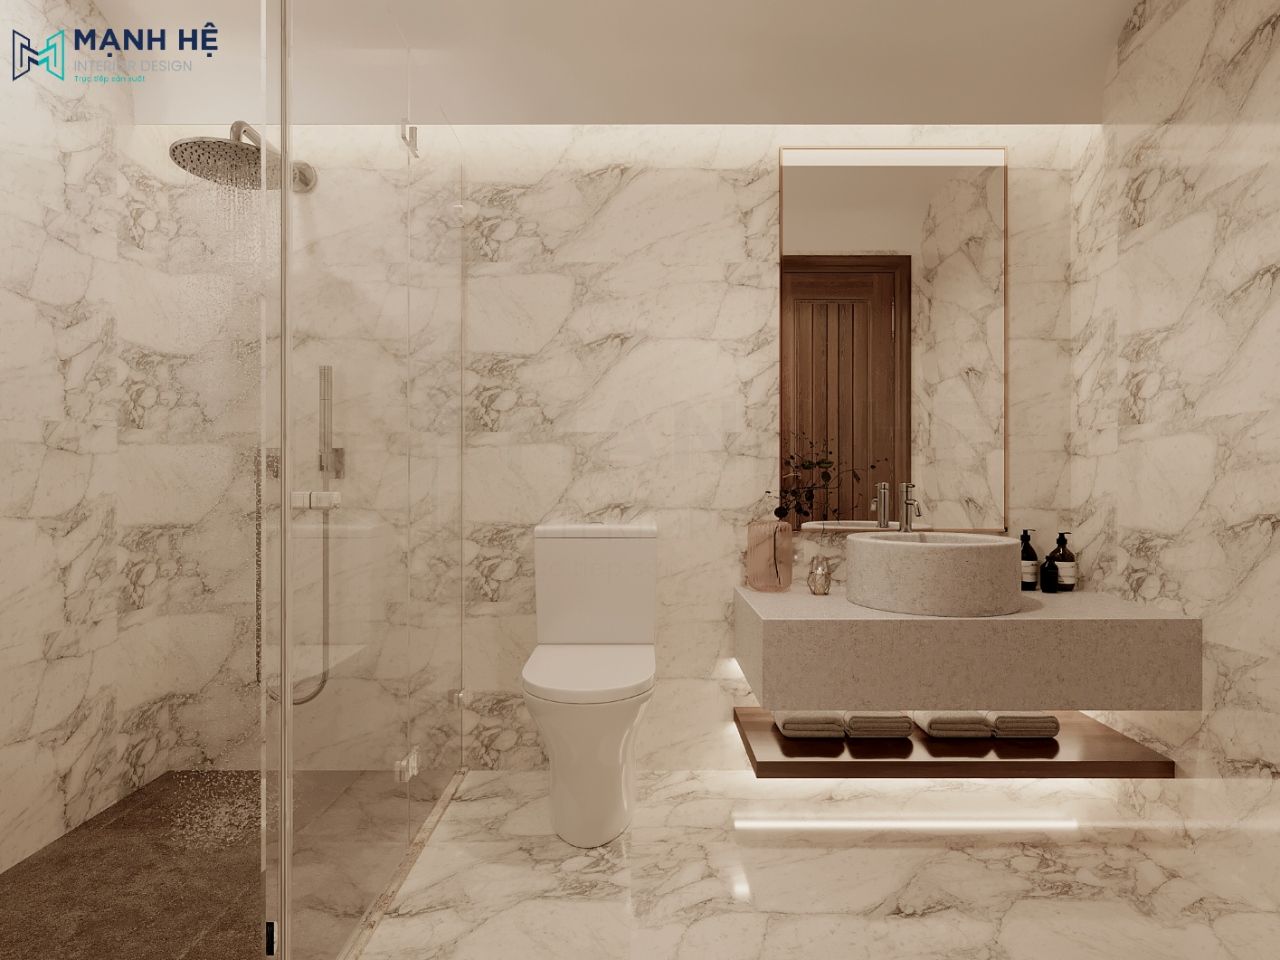 Phòng tắm được thiết kế với phòng tắm đứng ngăn cách với bồn rửa cho căn phòng thêm sạch sẽ và chống trơn trượt cho khách hàng